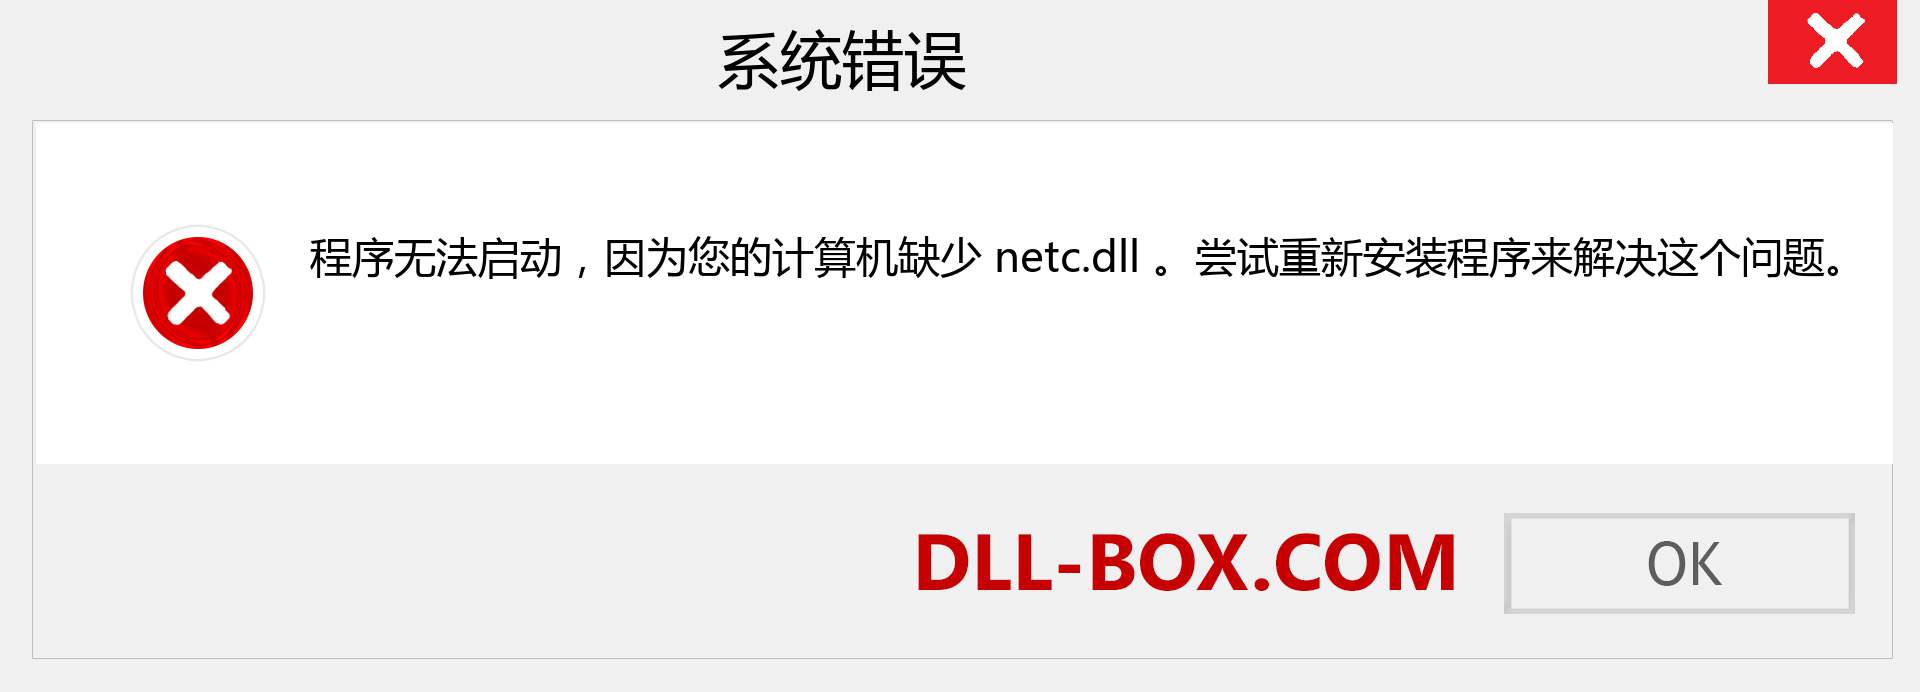 netc.dll 文件丢失？。 适用于 Windows 7、8、10 的下载 - 修复 Windows、照片、图像上的 netc dll 丢失错误